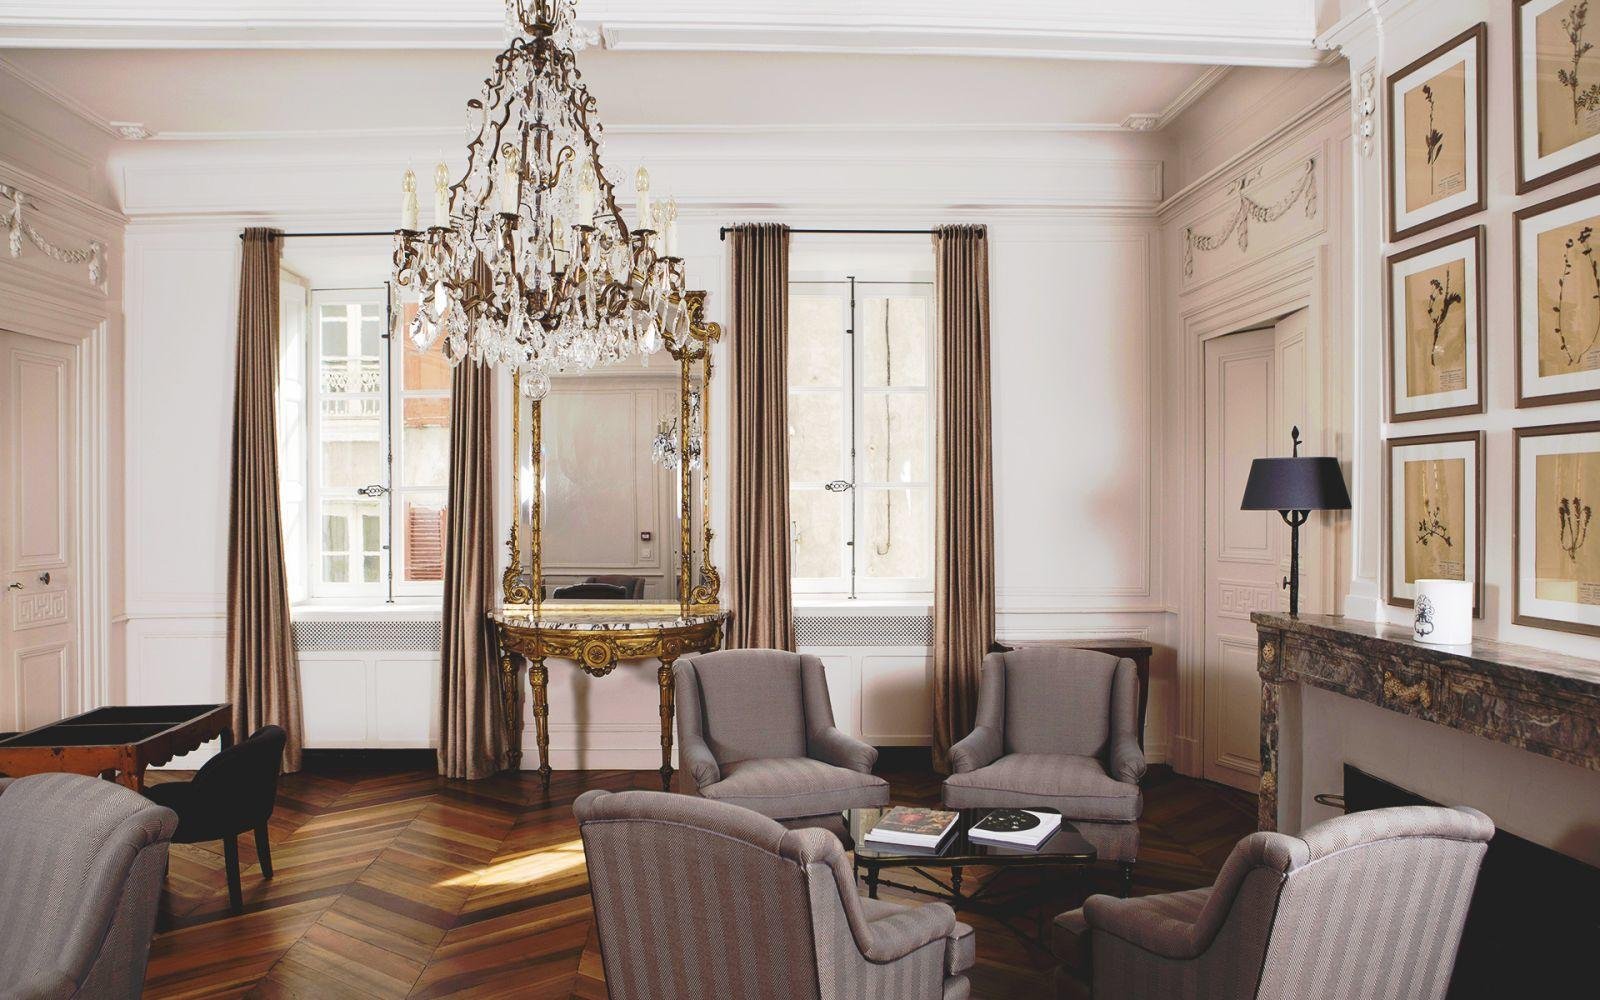 Hôtel de la Villeon | Luxury Hotel in the Rhône Valley